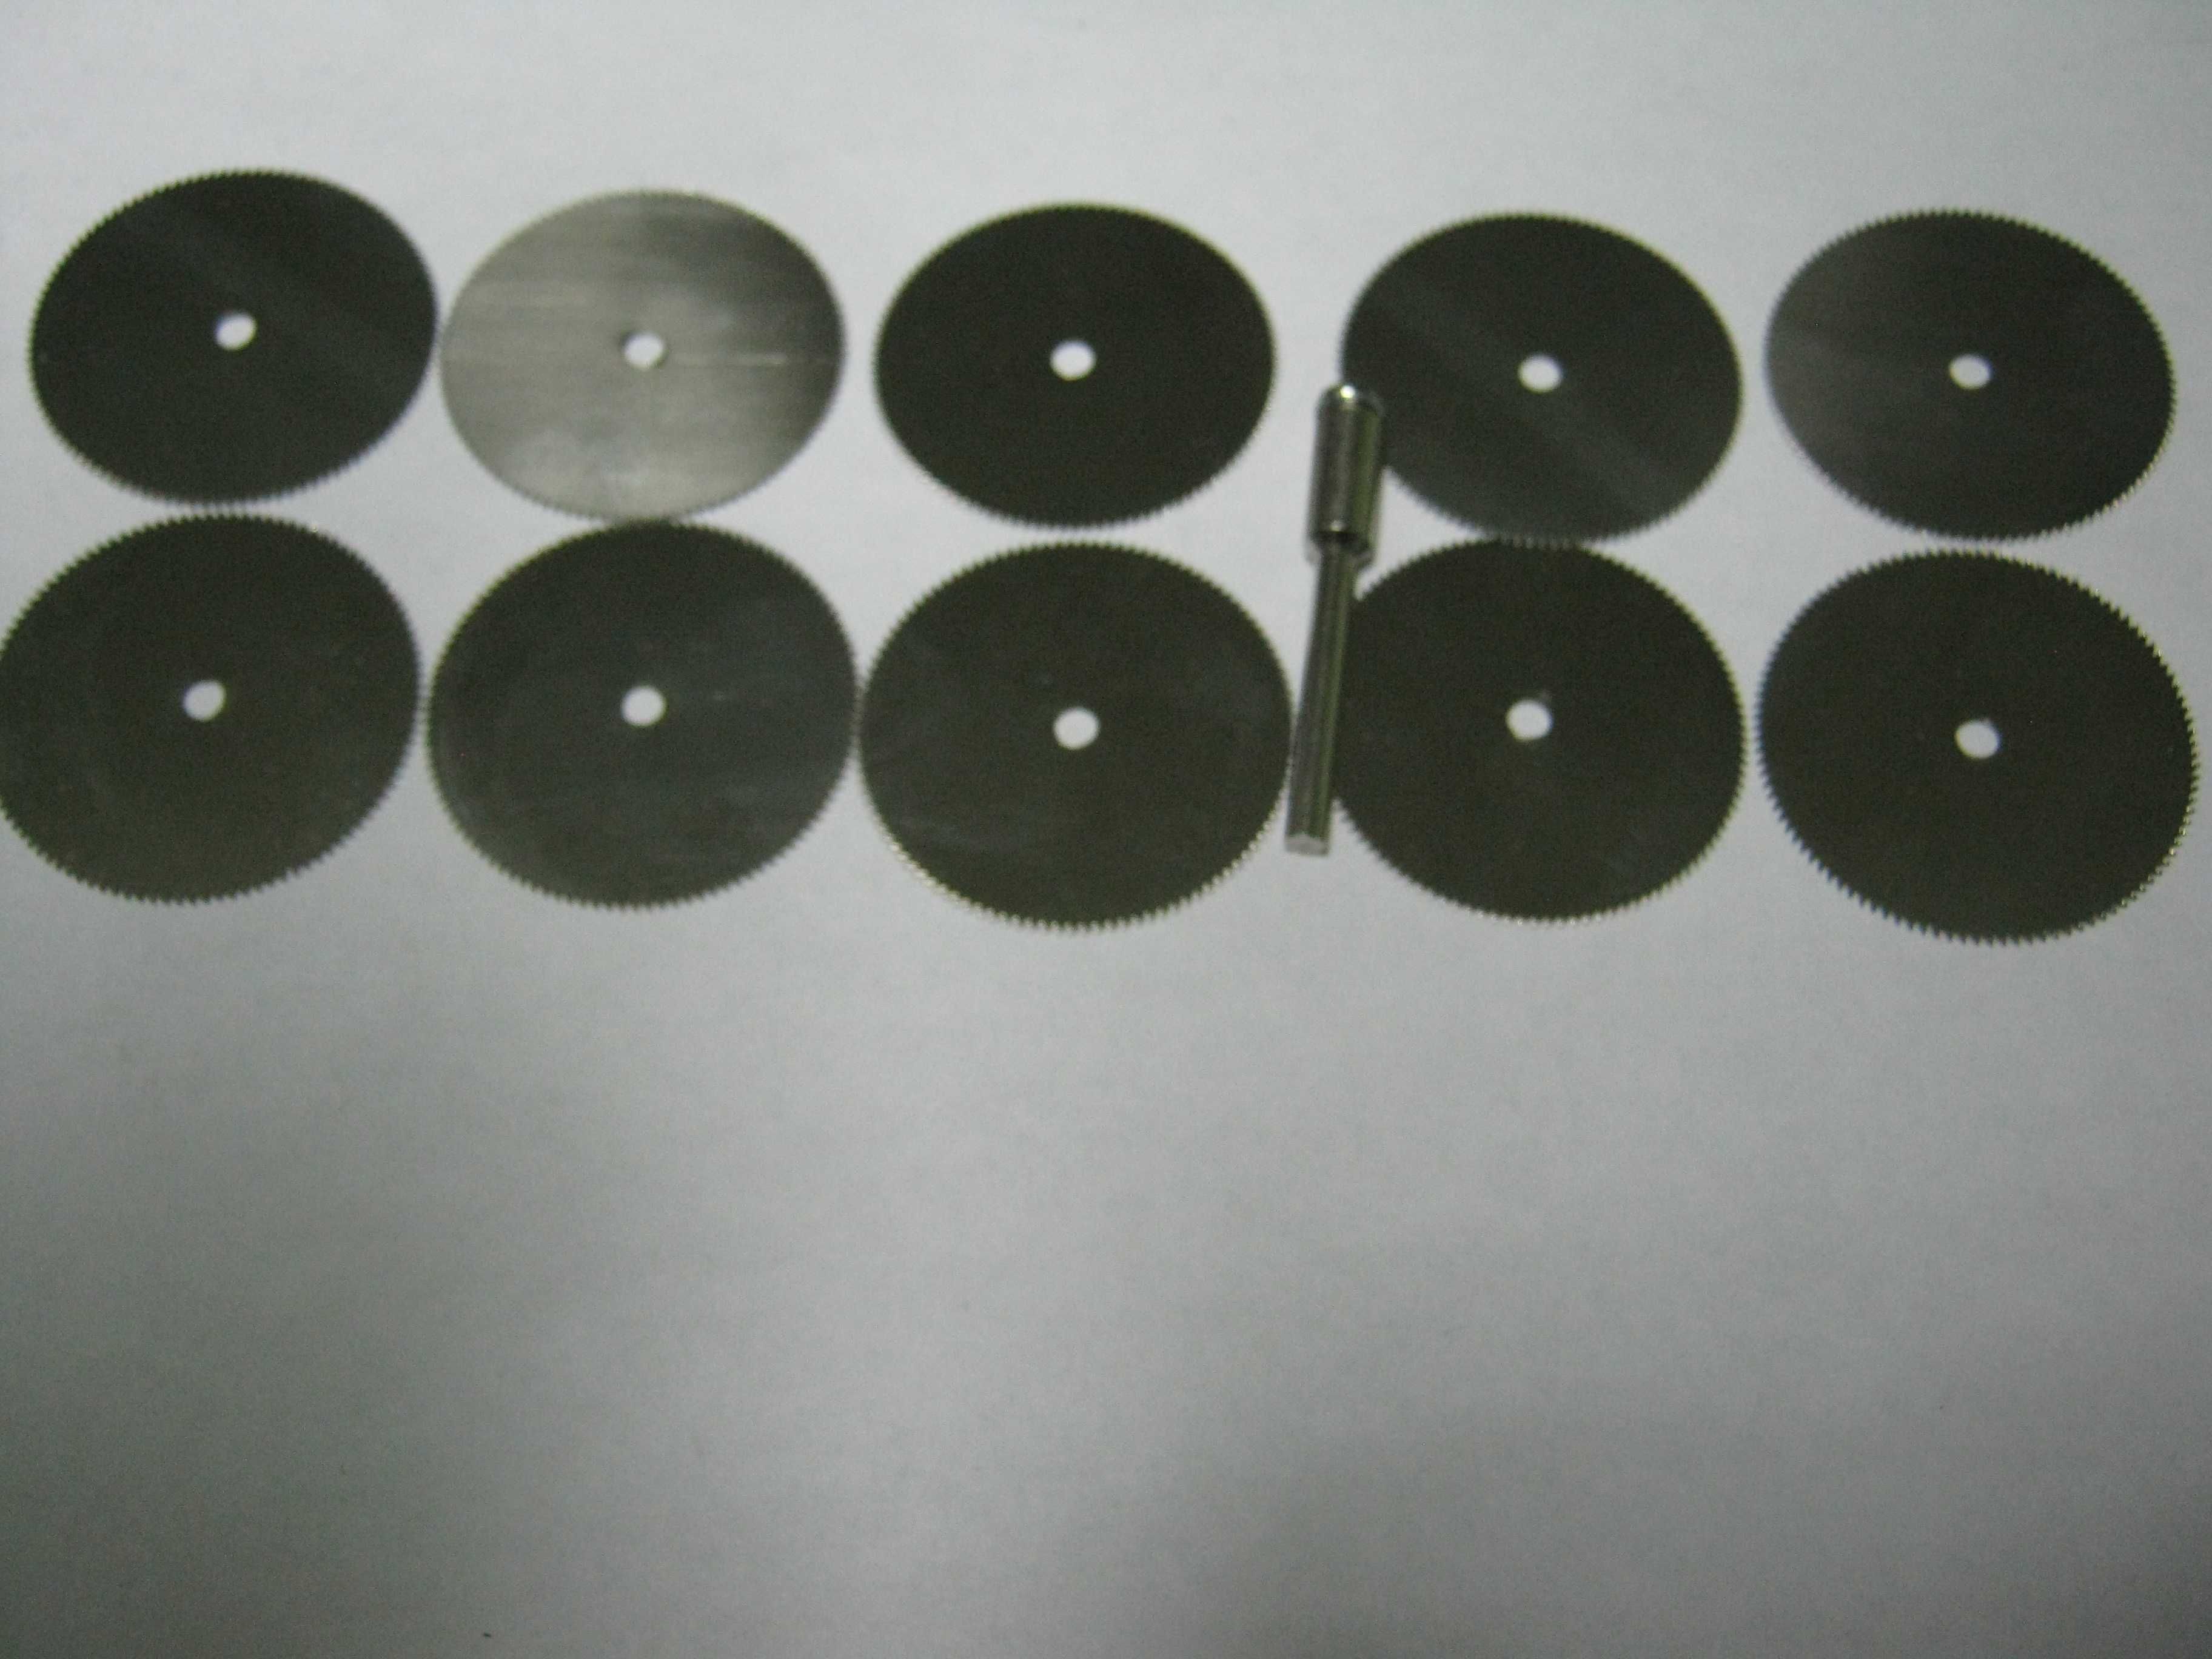 Отрезные диски для дремеля 10шт.ф32мм+держ. (зубчатые или армированые)